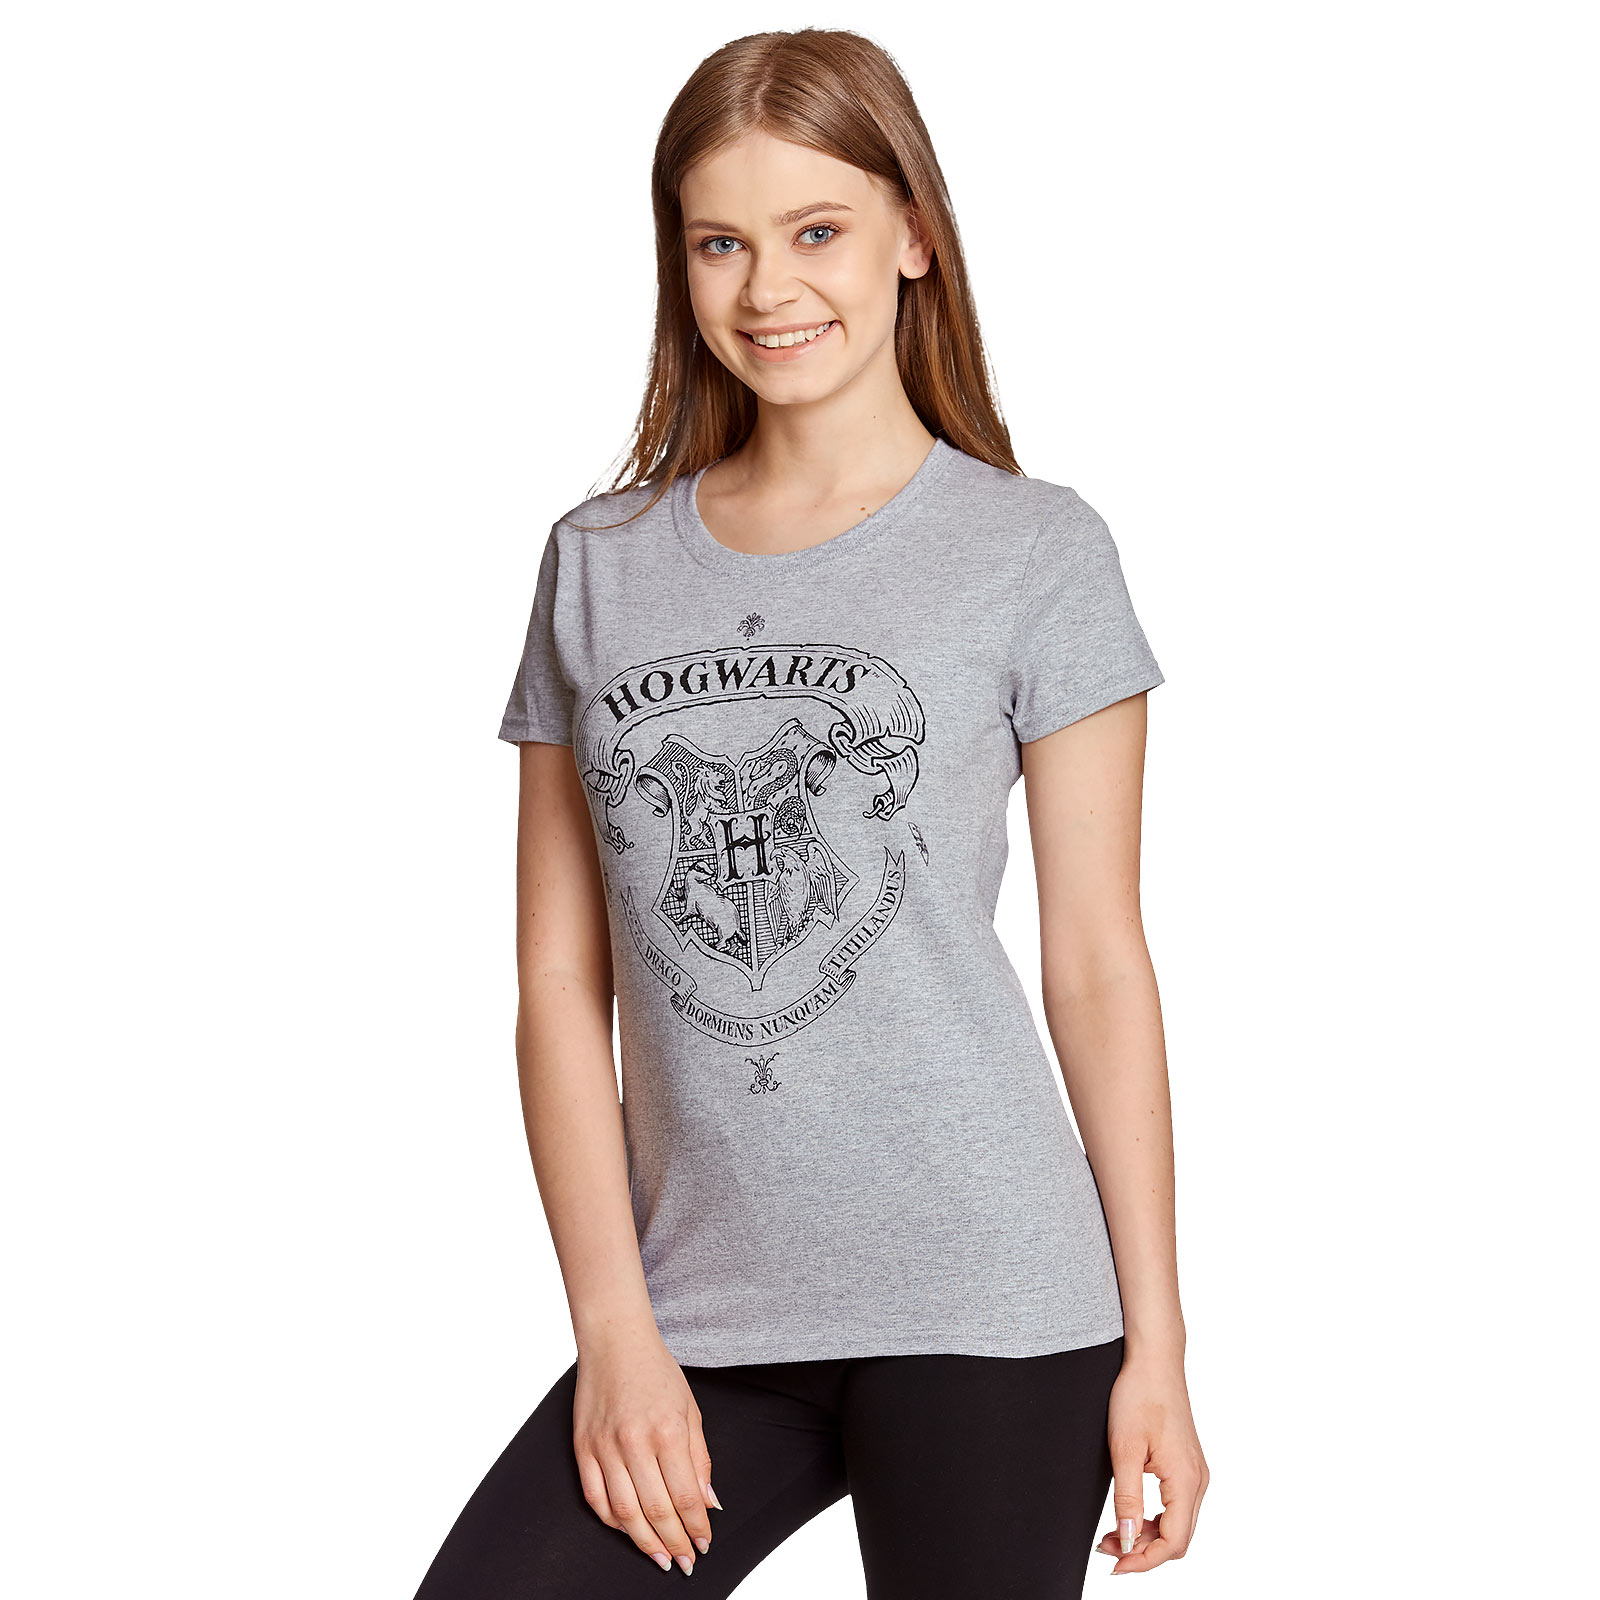 Harry Potter - Hogwarts Crest T-Shirt Women's Grey